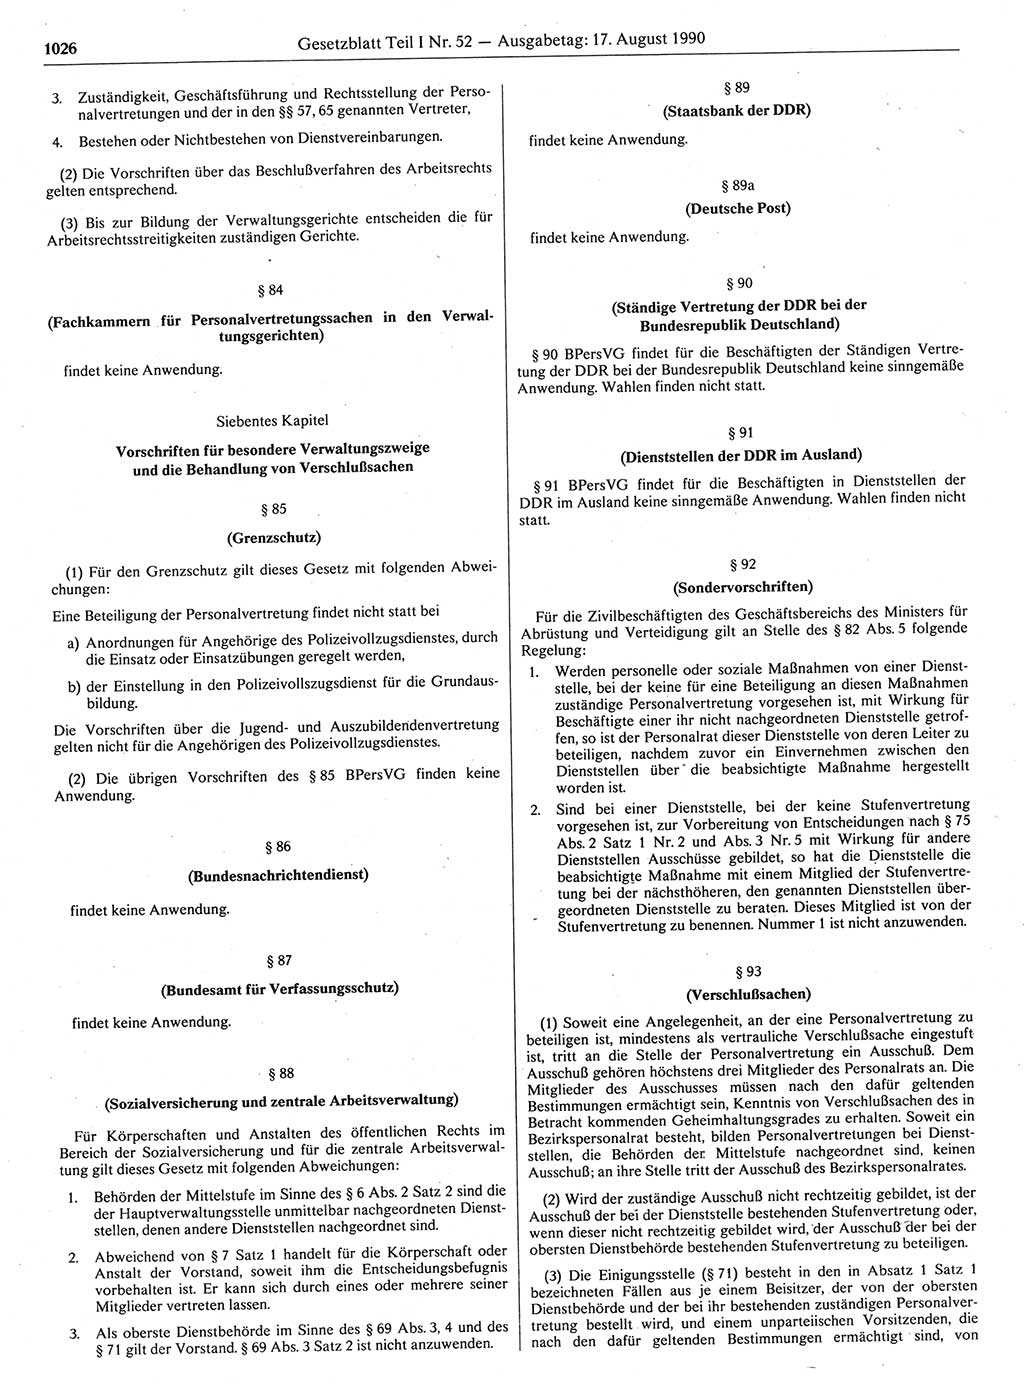 Gesetzblatt (GBl.) der Deutschen Demokratischen Republik (DDR) Teil Ⅰ 1990, Seite 1026 (GBl. DDR Ⅰ 1990, S. 1026)